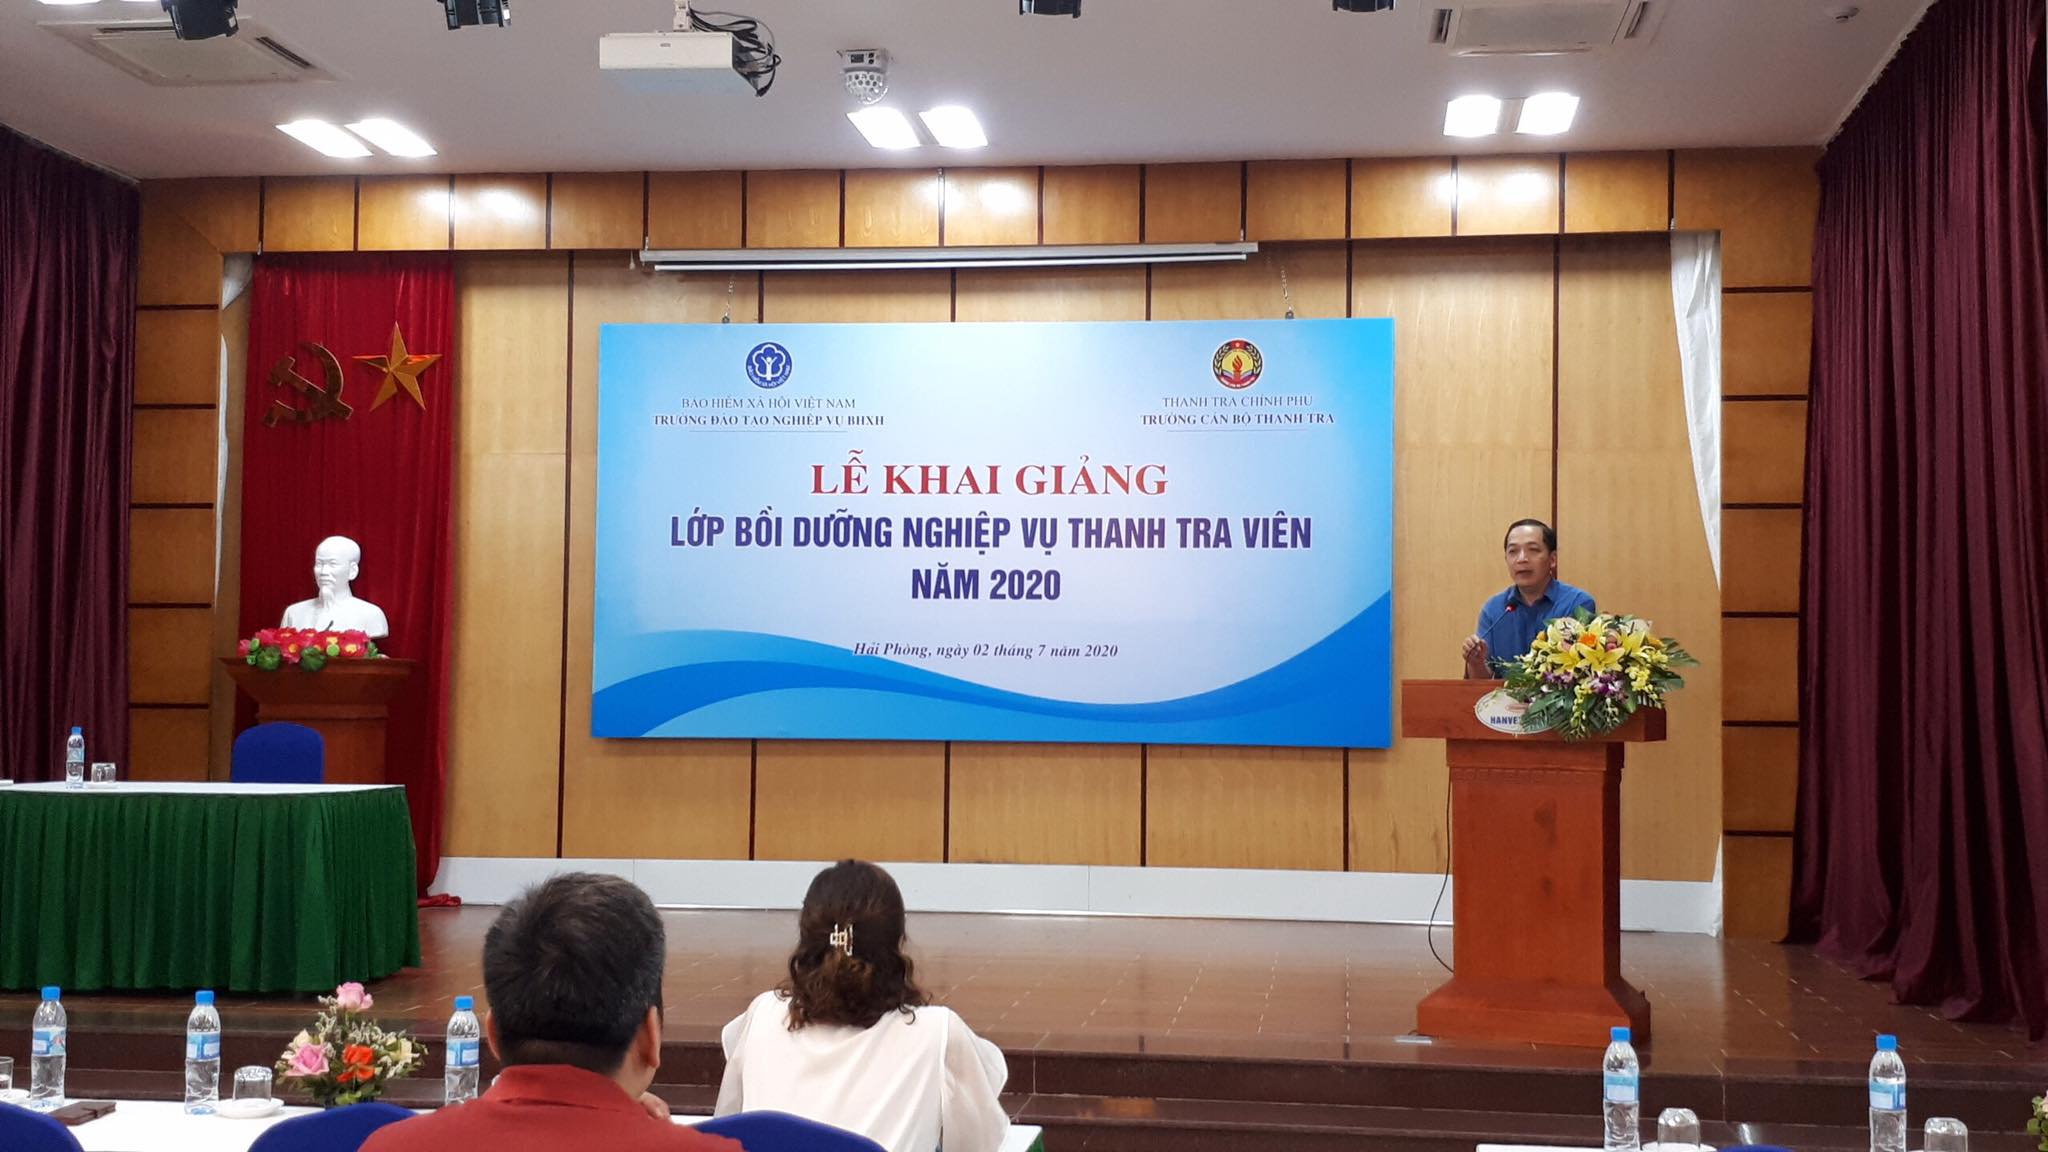 TS Nguyễn Huy Hoàng TTVCC Phó Hiệu trưởng trường CBTT phát biểu khai giang khóa học